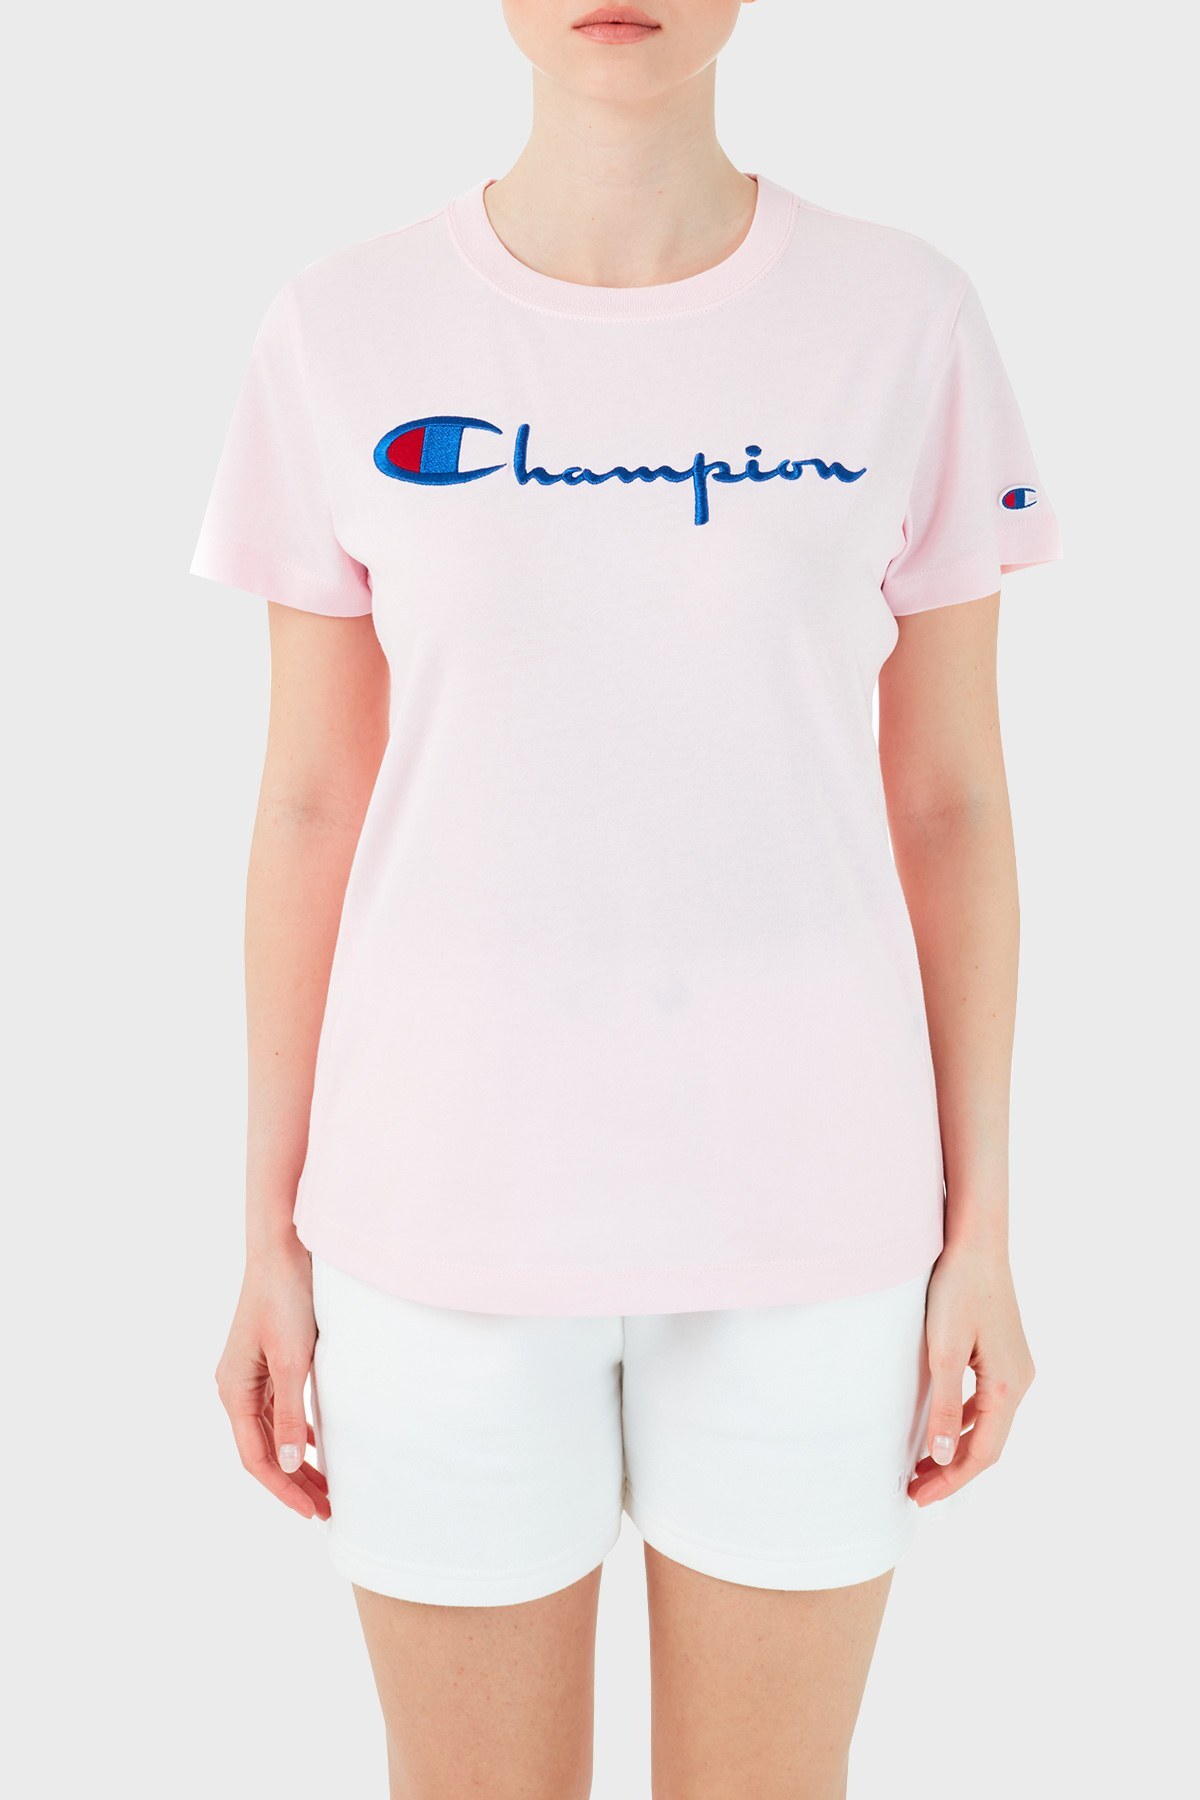 Champion Logo Baskılı Bisiklet Yaka % 100 Pamuk Bayan T Shirt 110992 BAP PS104 PEMBE